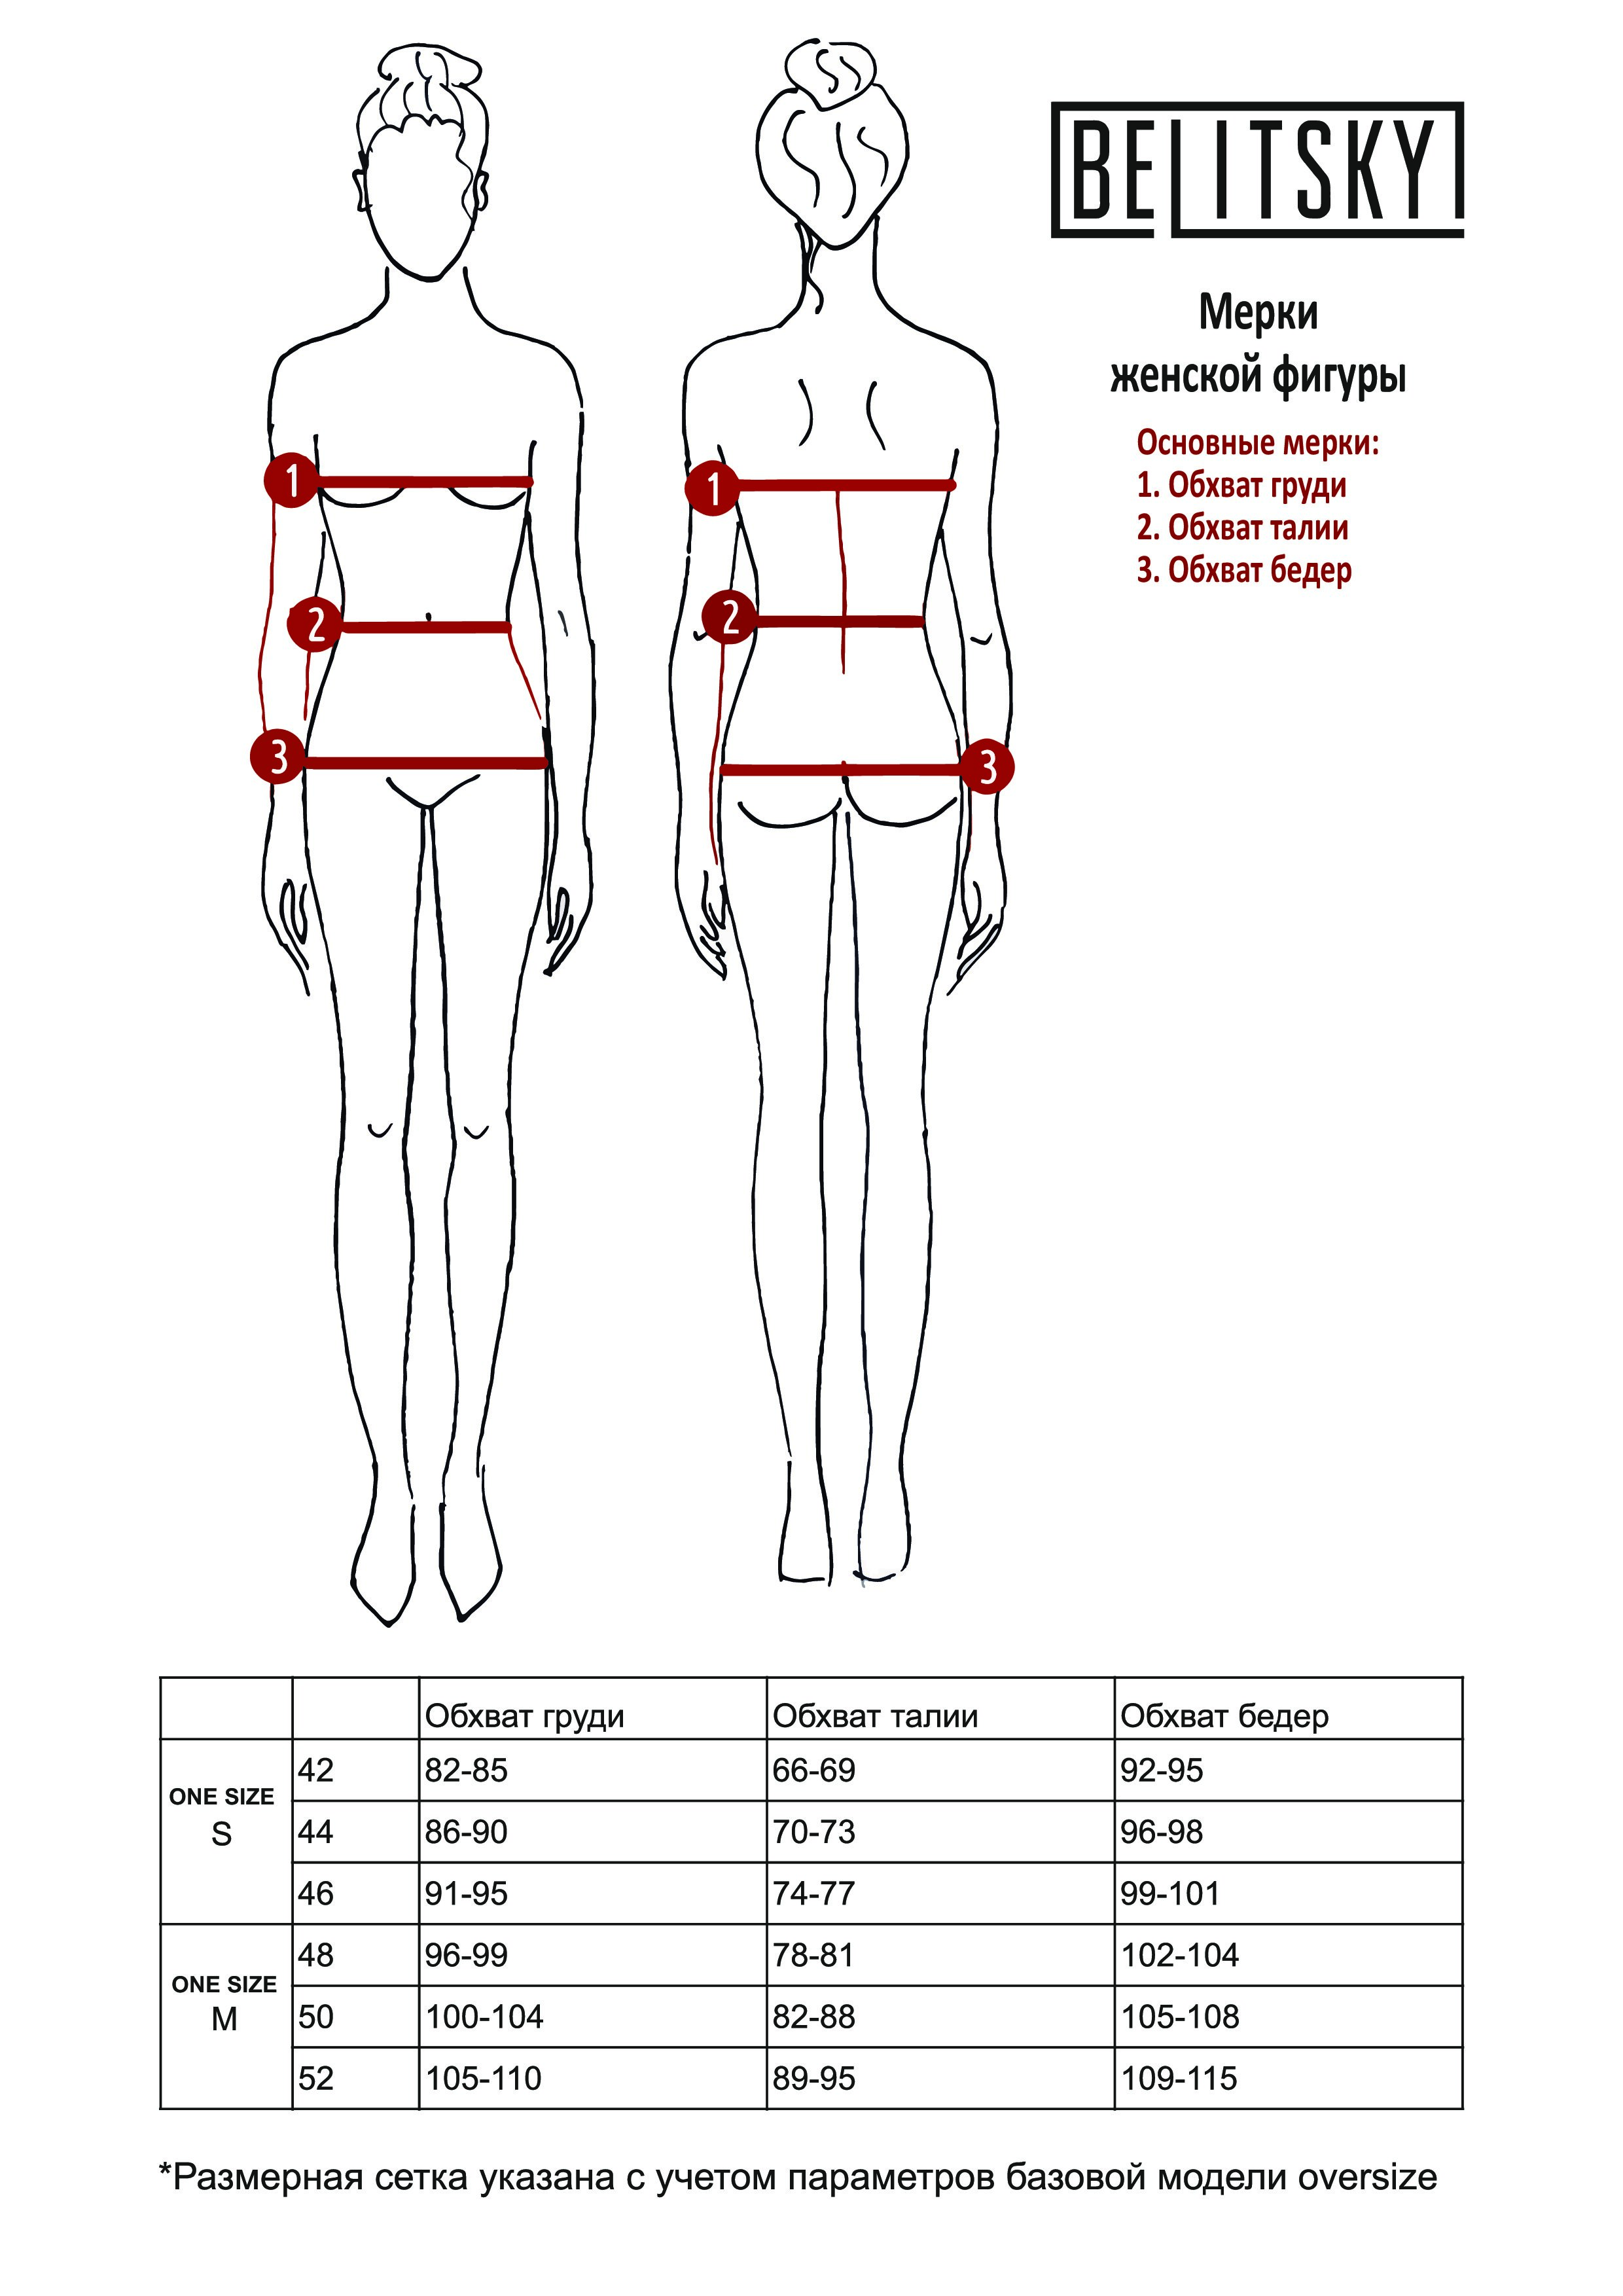 измерить объем груди у женщин фото 97